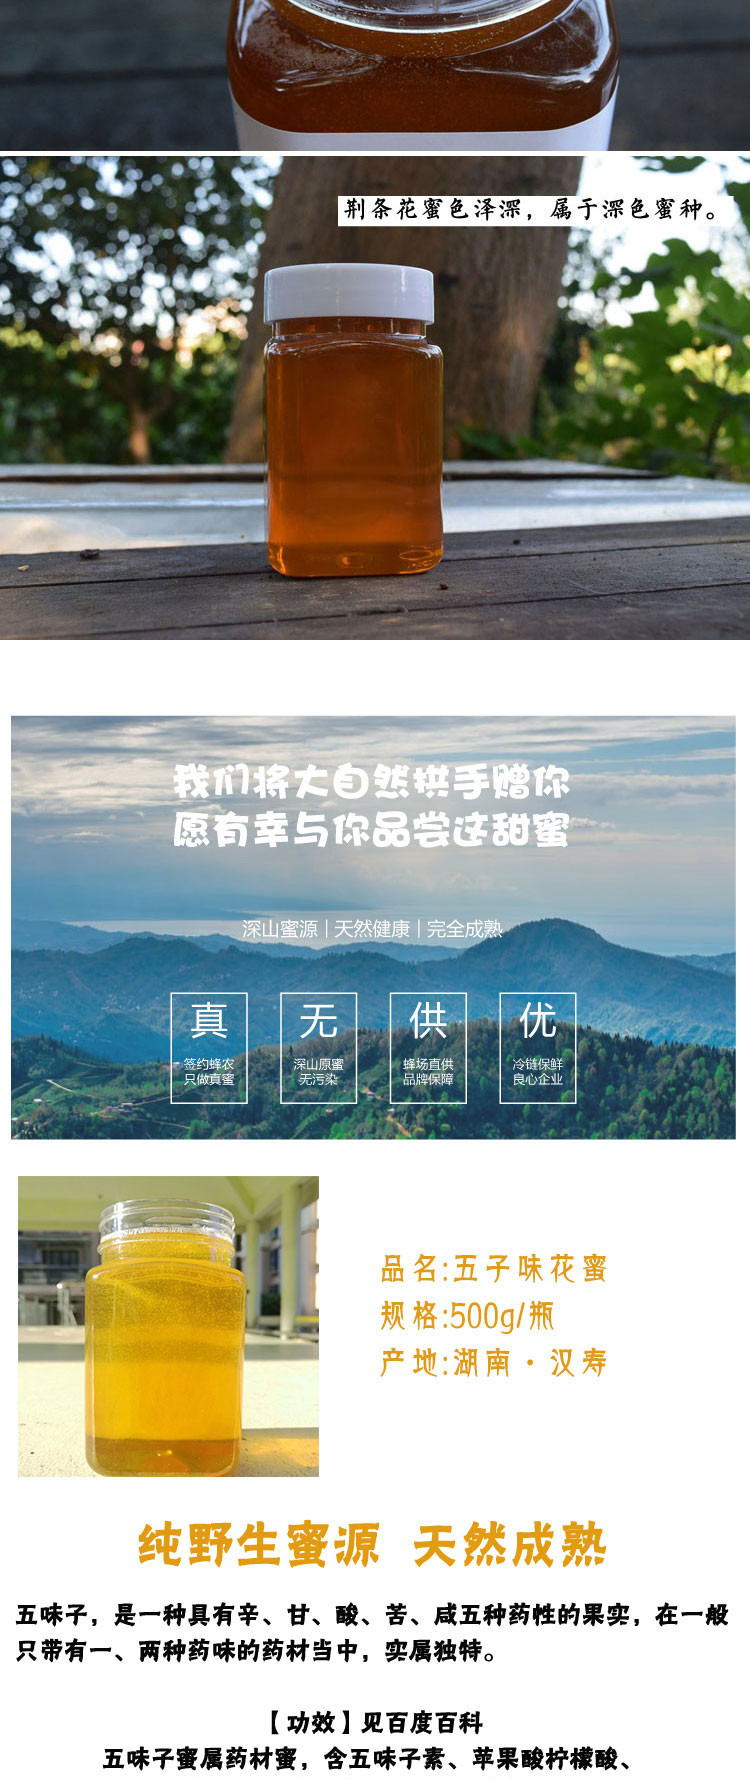 【湖南常德】汉寿柳林村五子味蜜枣花蜜 荆花蜜1斤装野生土蜂蜜500g瓶装